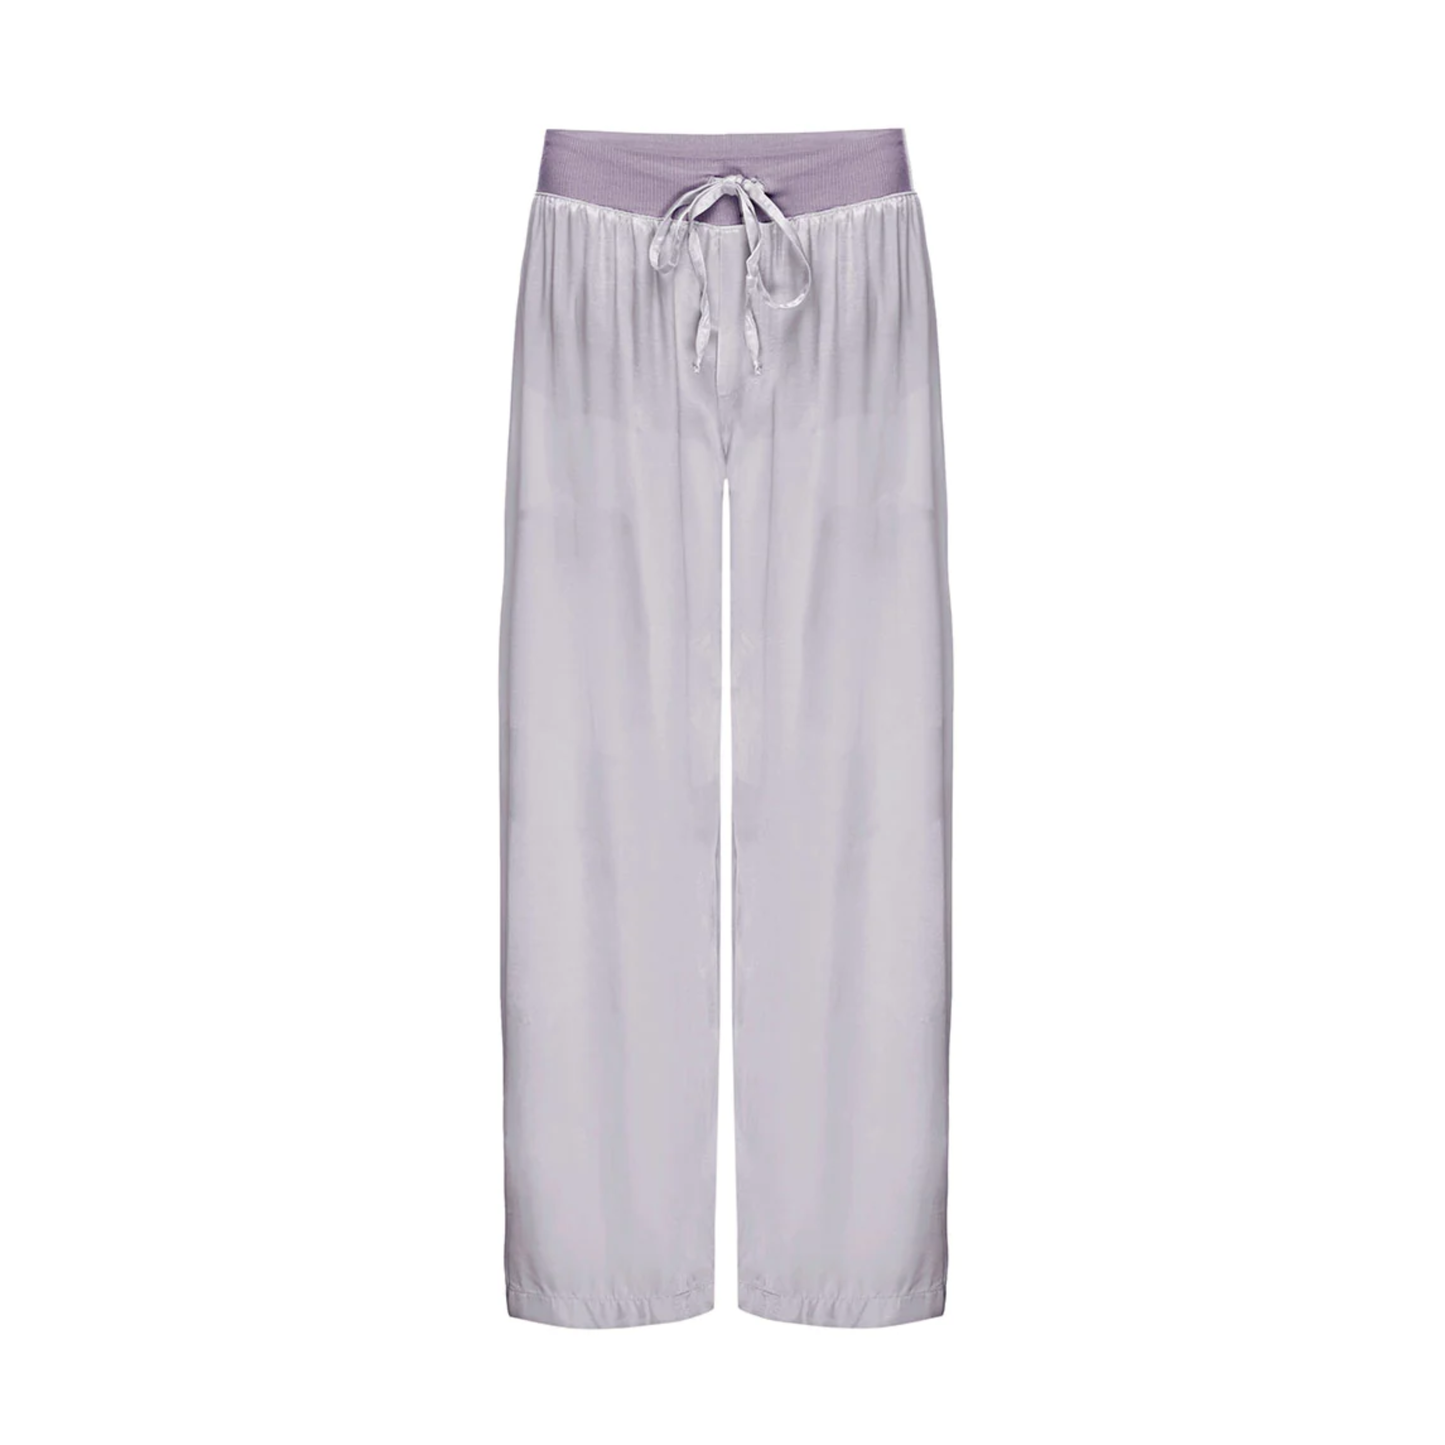 Jolie Capri Pants (Multiple Color Options)